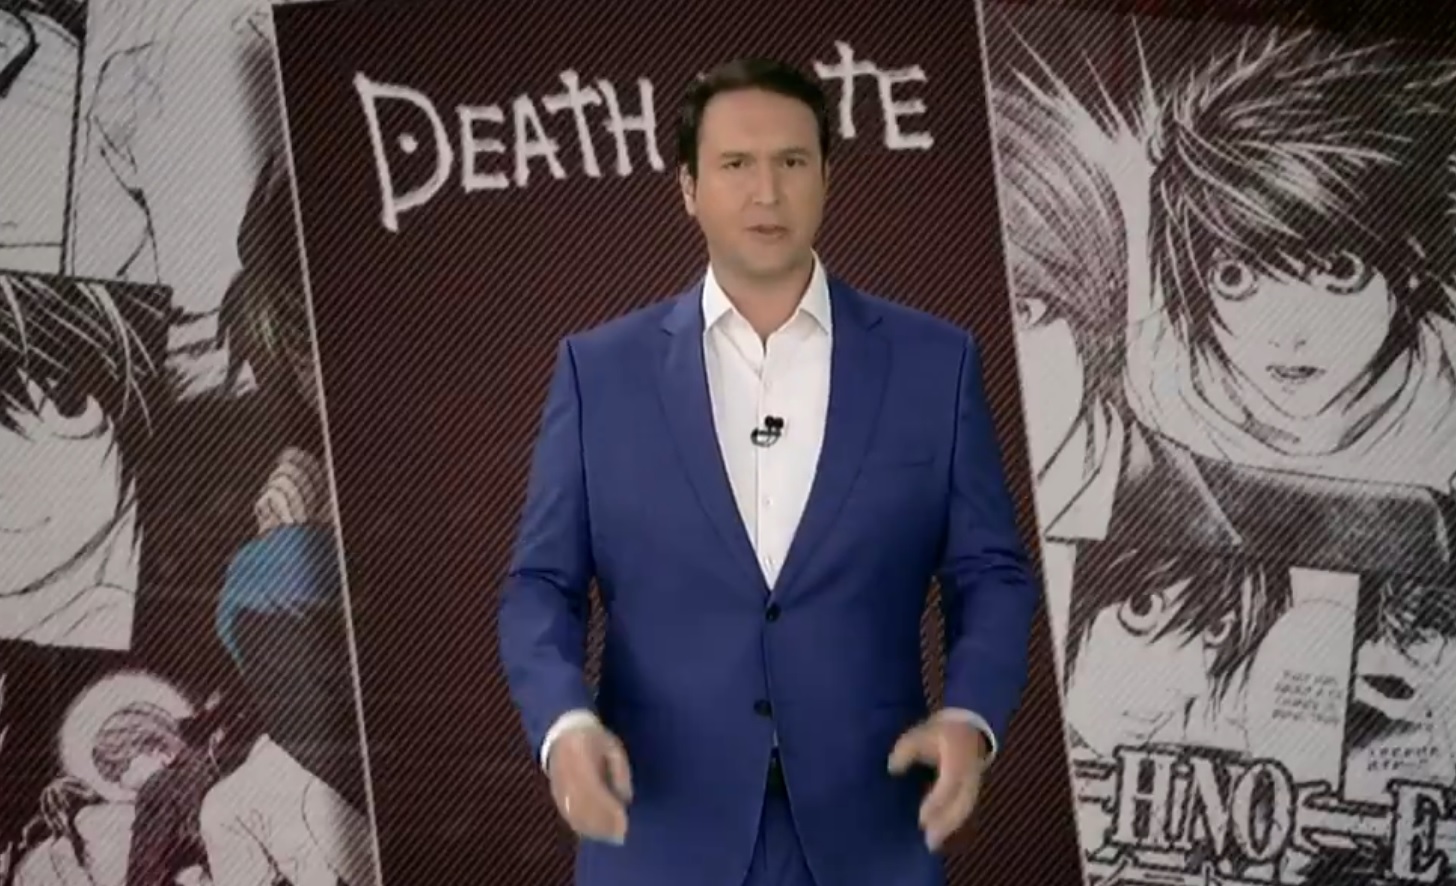 Fãs reagem à reportagem sensacionalista sobre Death Note